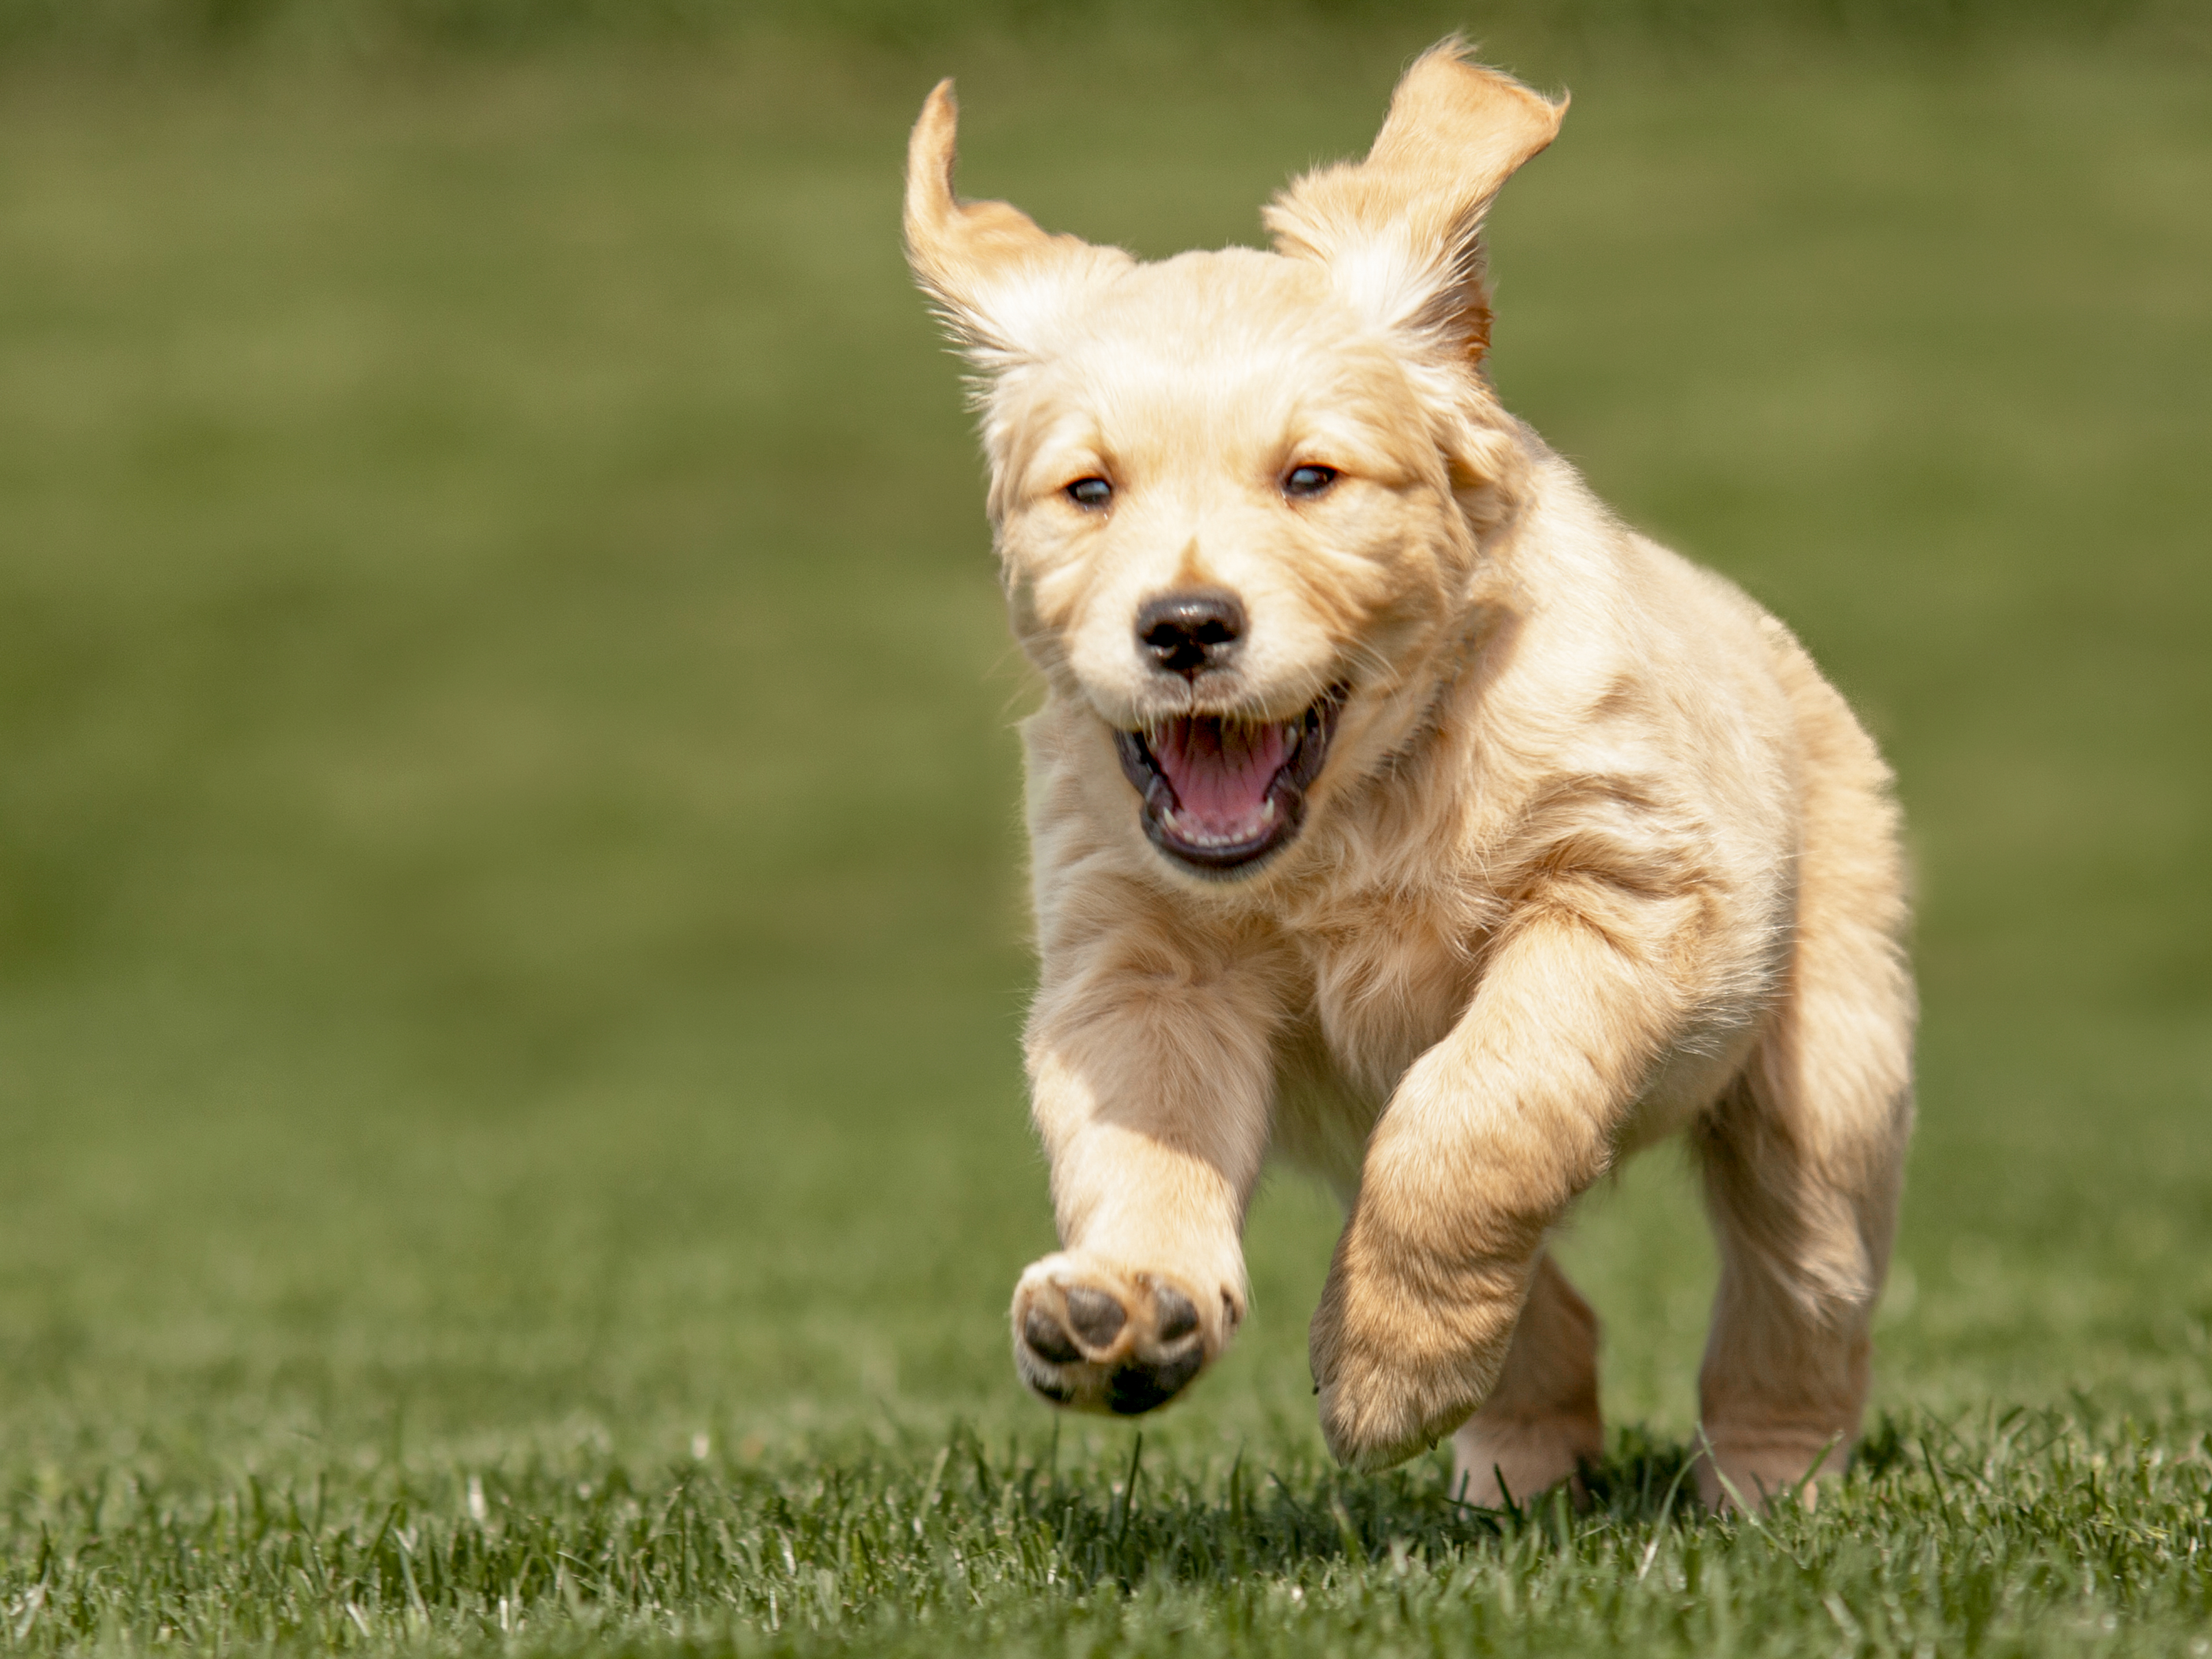 Golden Retriever puppy running outdoors in the grass